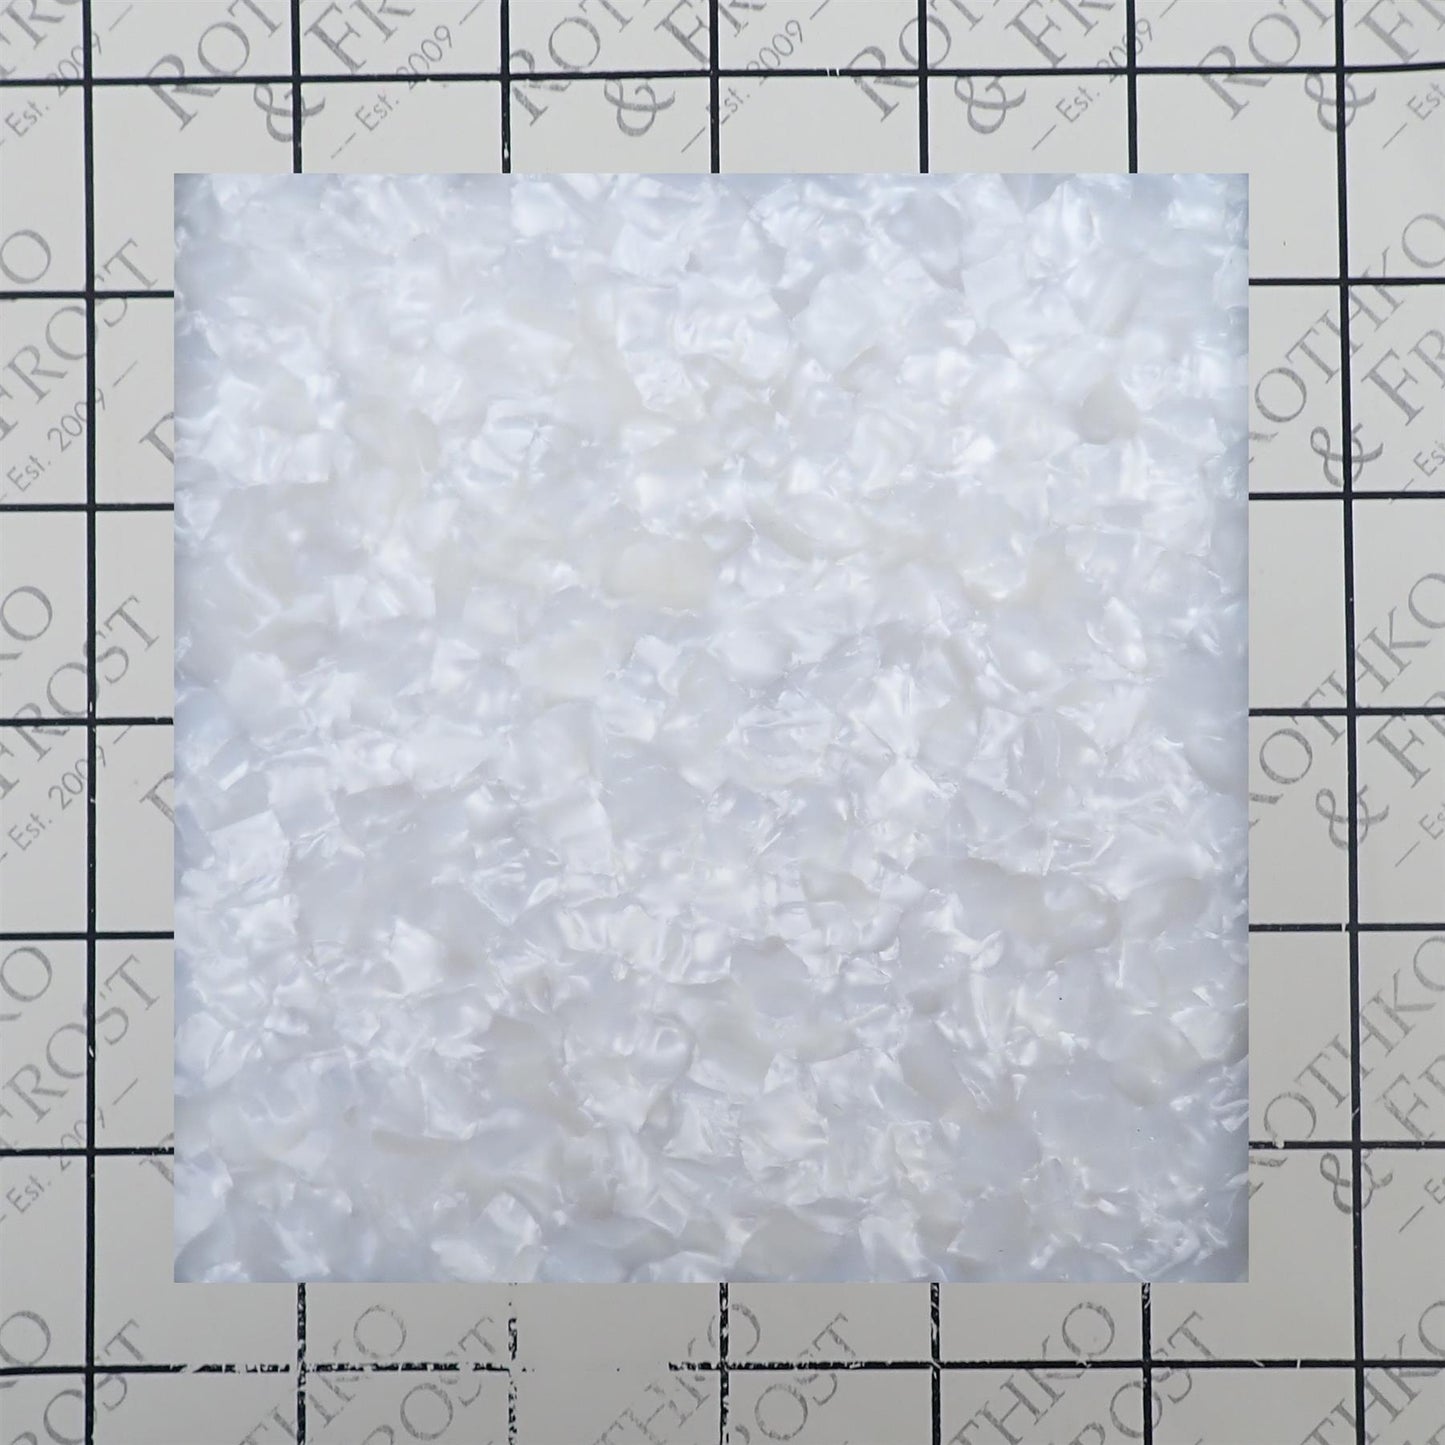 Incudo White Pearloid Celluloid Sheet - 200x100x1.5mm (7.9x3.94x0.06")